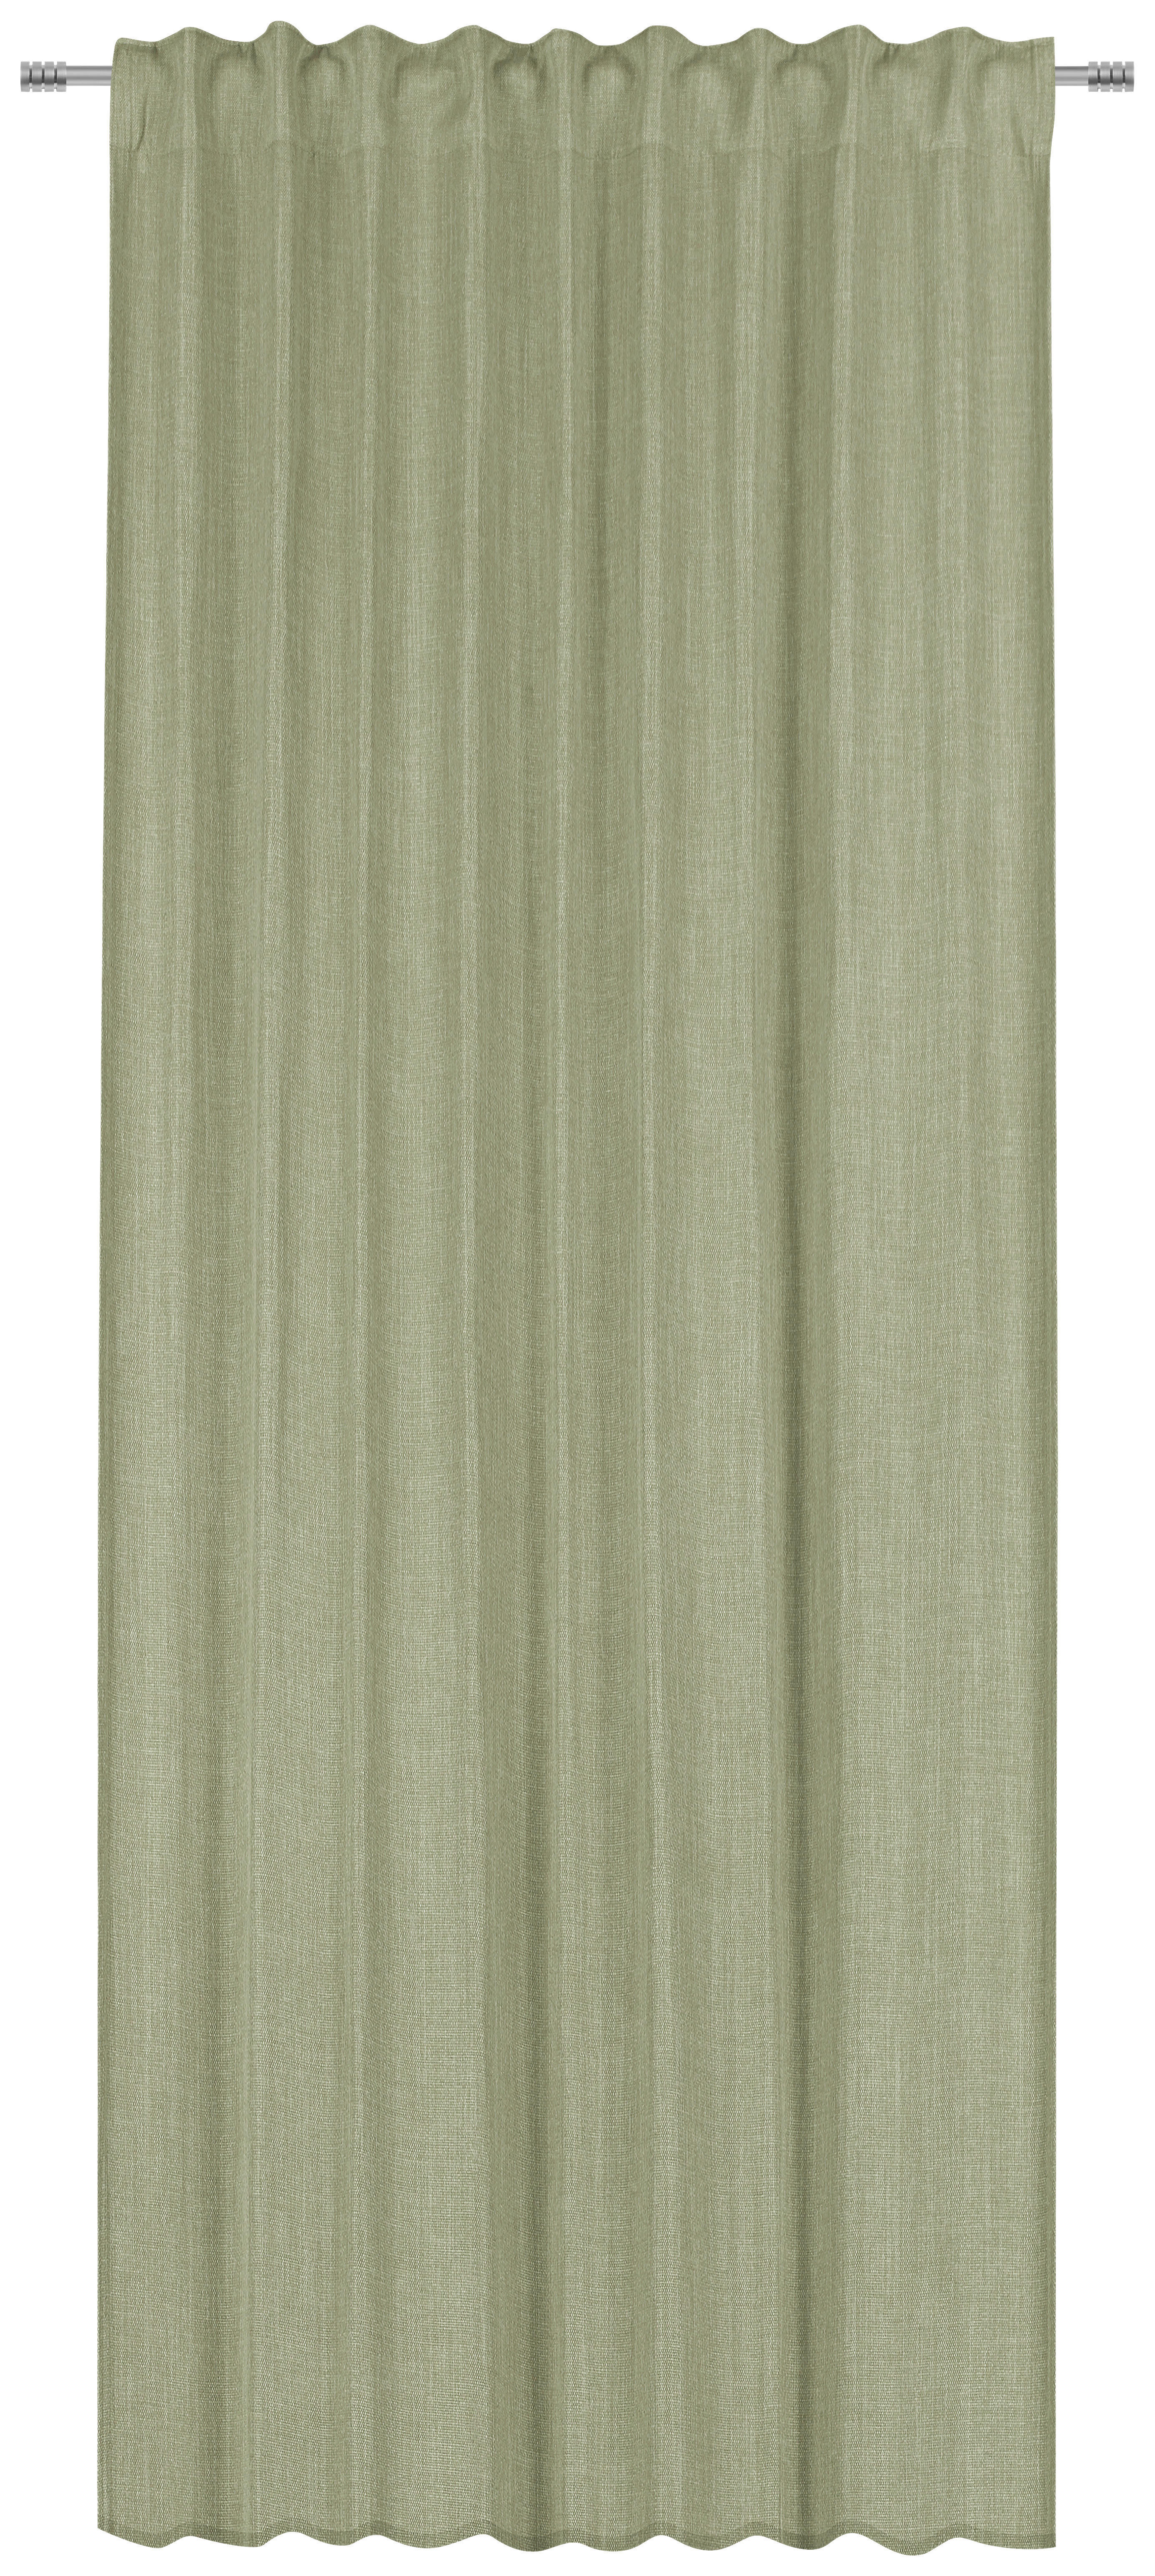 GOTOVA ZAVJESA zelena - zelena, Konvencionalno, tekstil (135/300cm) - Esposa